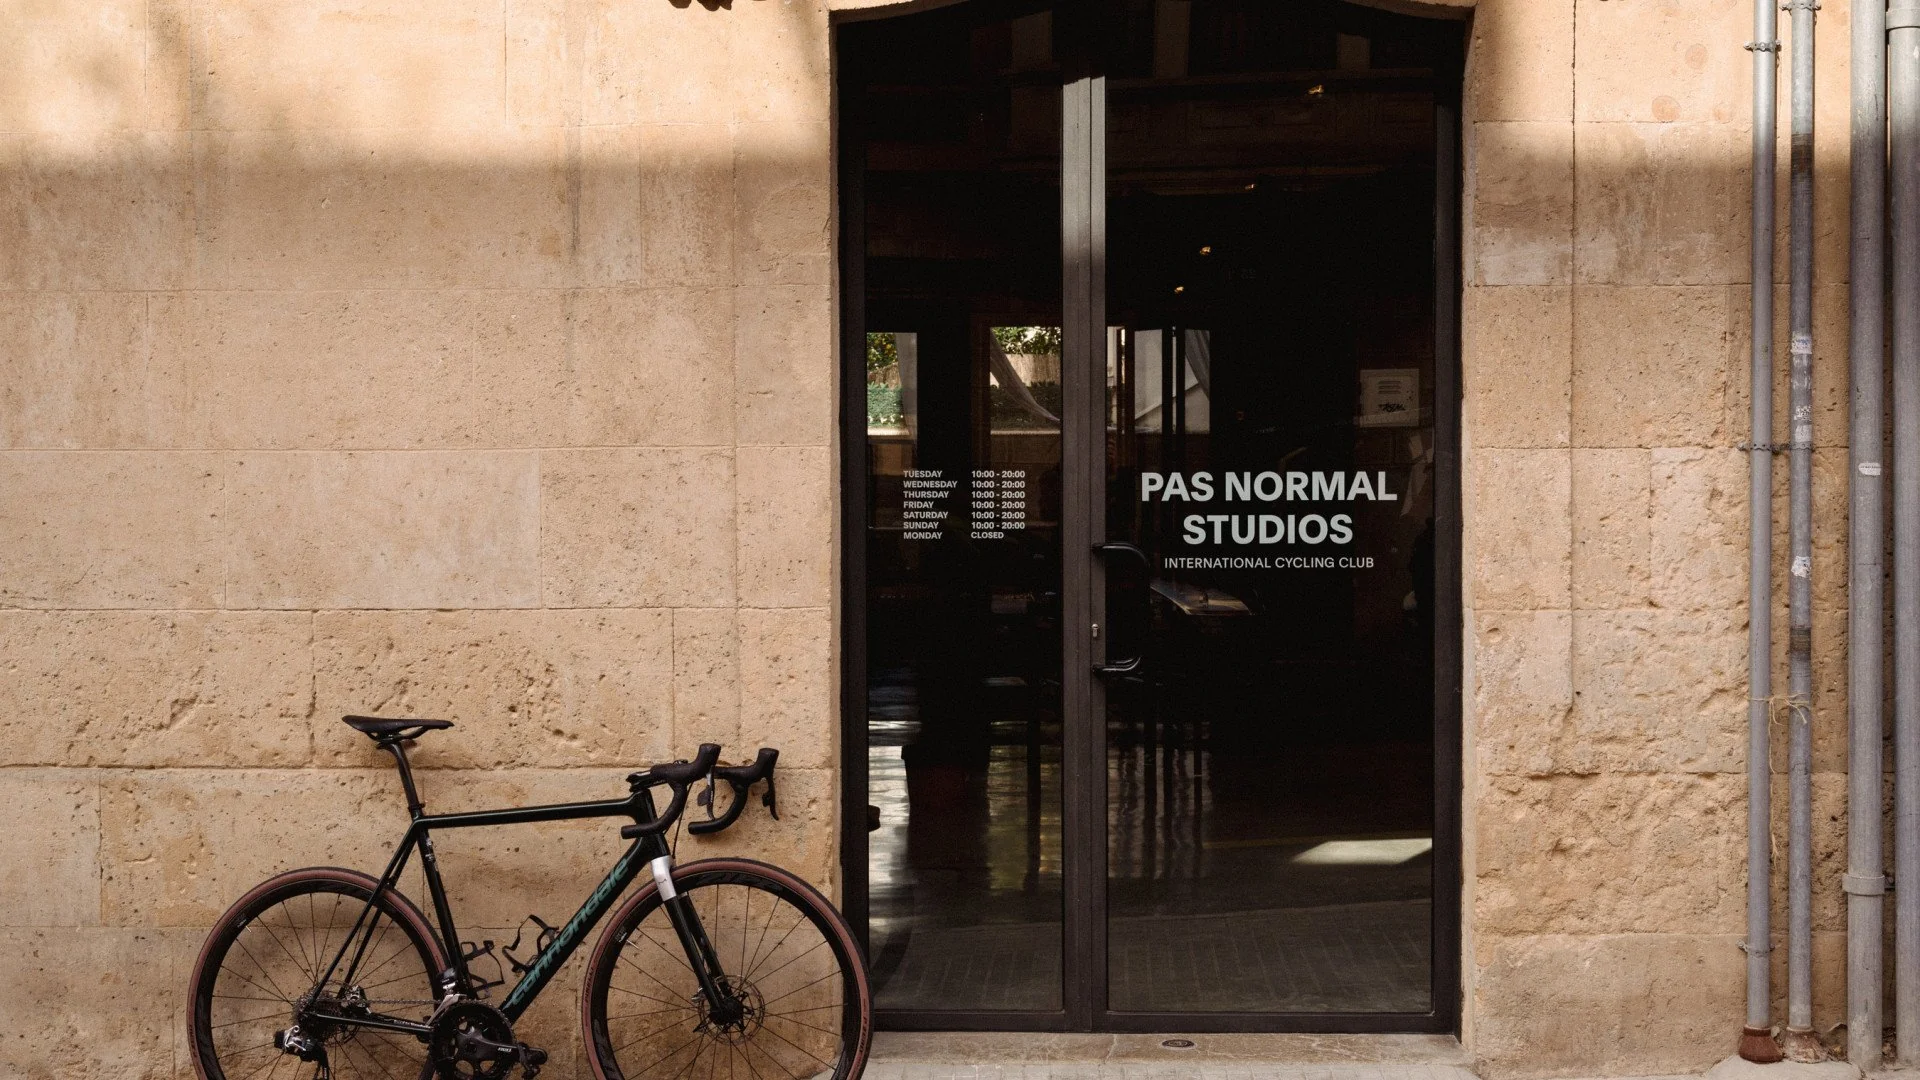 Danish Pas Normal Studios opens in Singapore - Scandasia